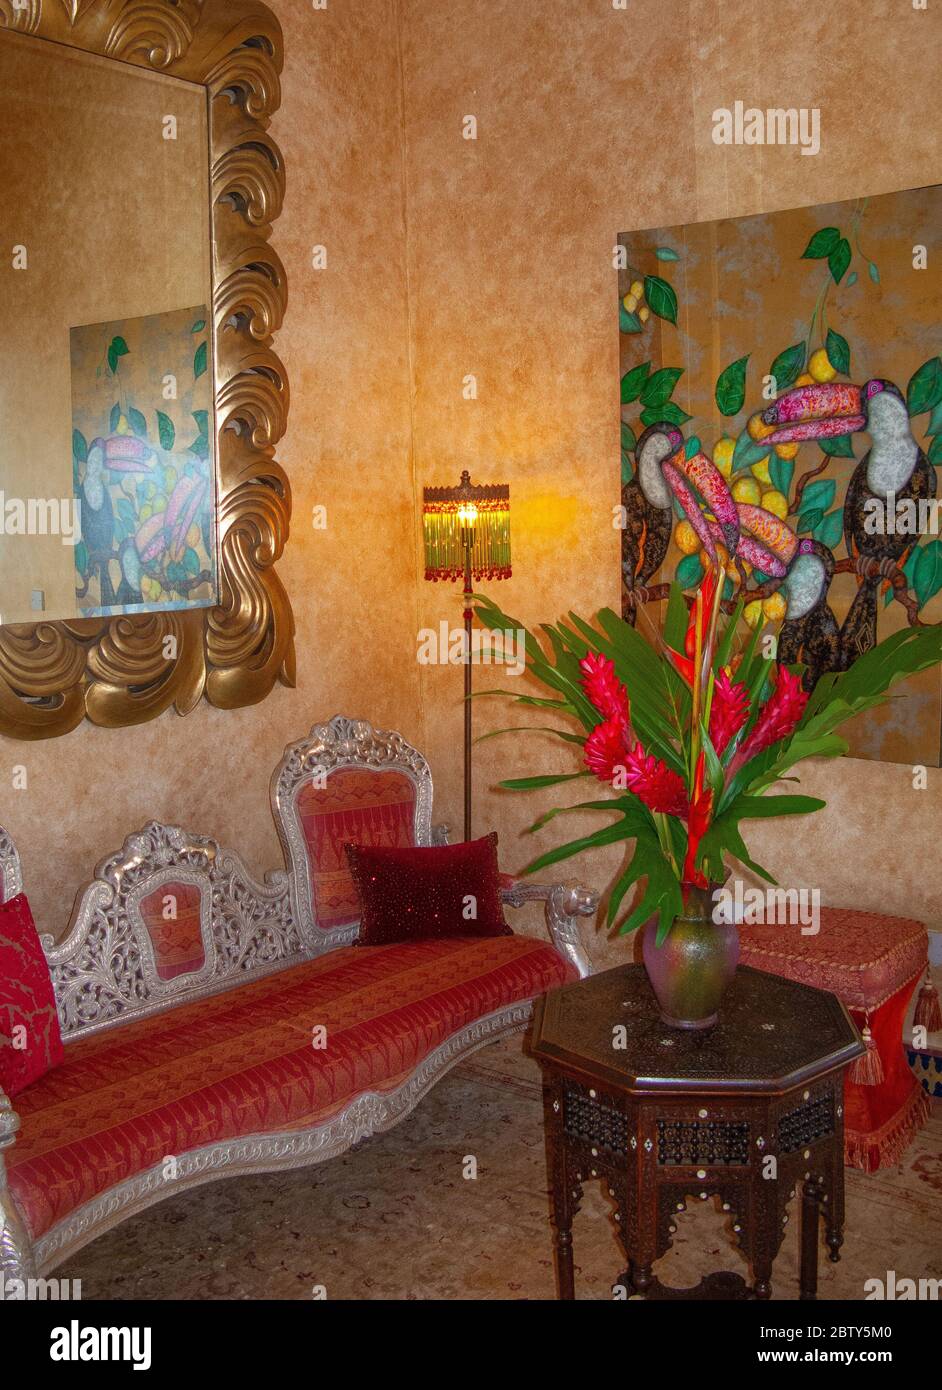 Toucan Hill Villa, eine villa im marokkanischen Stil, die höchste Villa auf Mustique Island. Ein exklusives Paradies, Kurzurlaub und Karibik Ziel Stockfoto